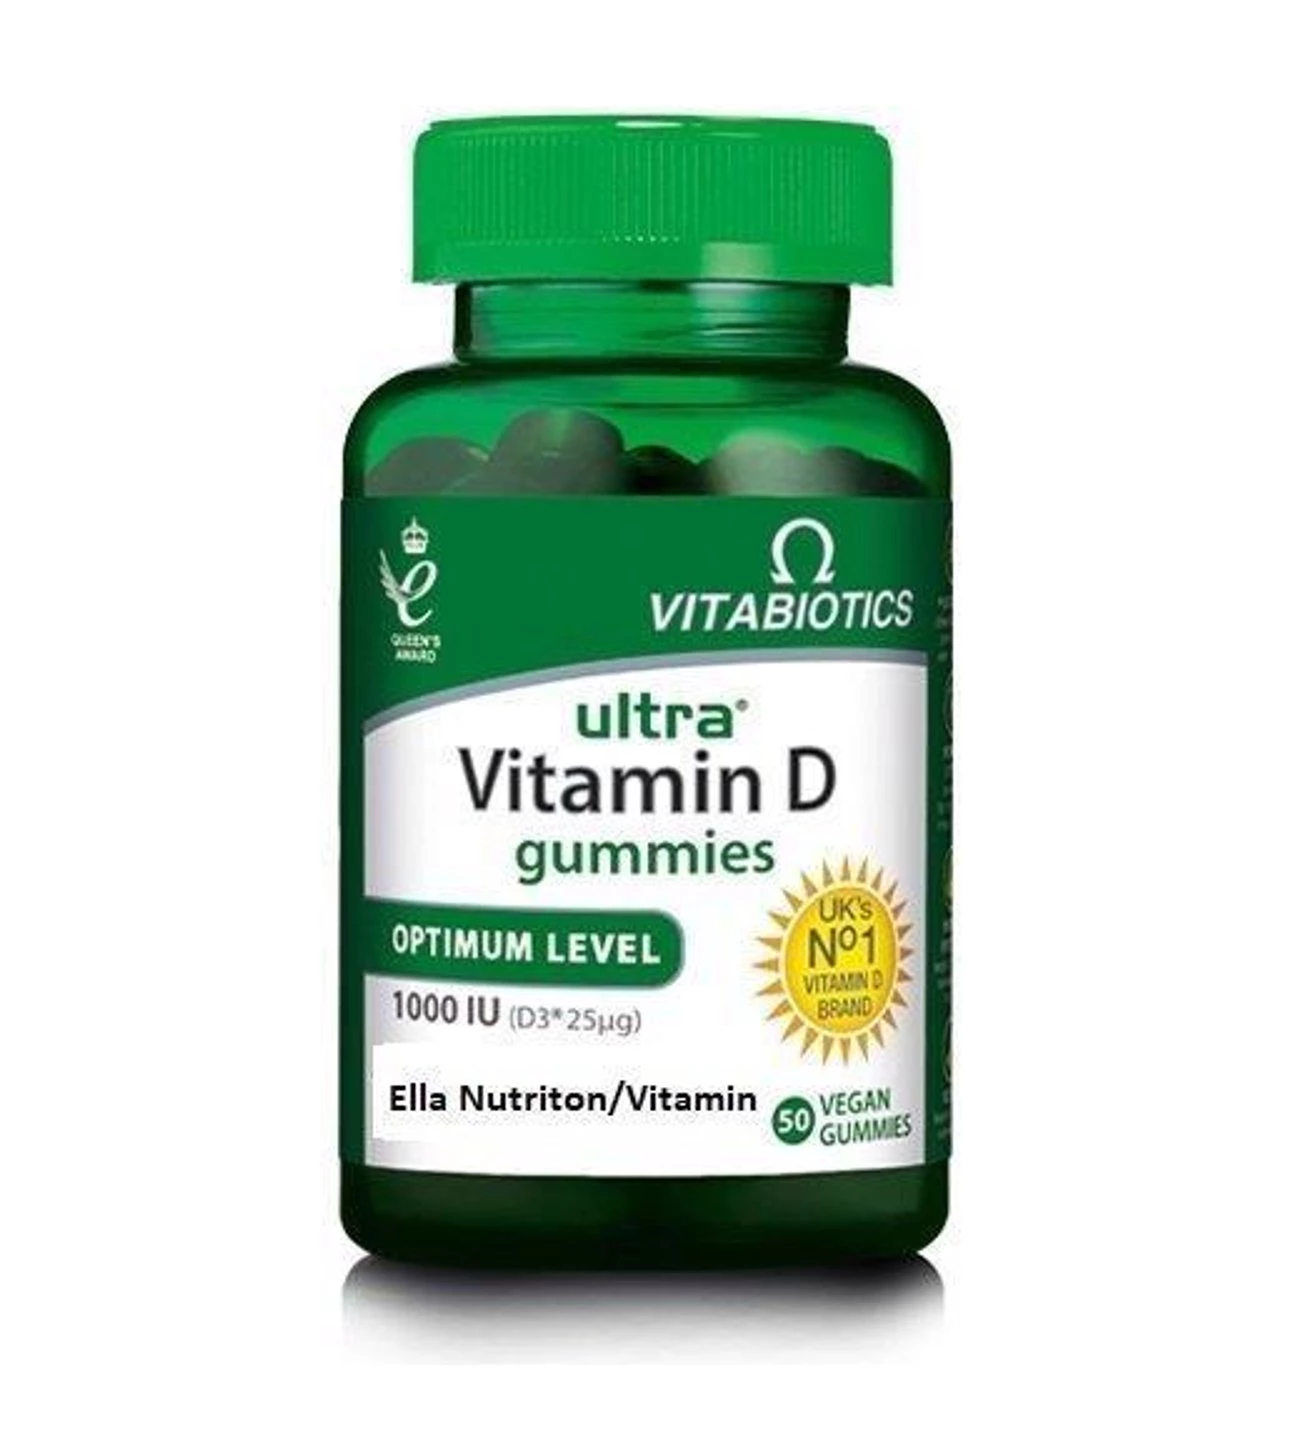  Vitabiotics Ultra Vitamin D Gummies